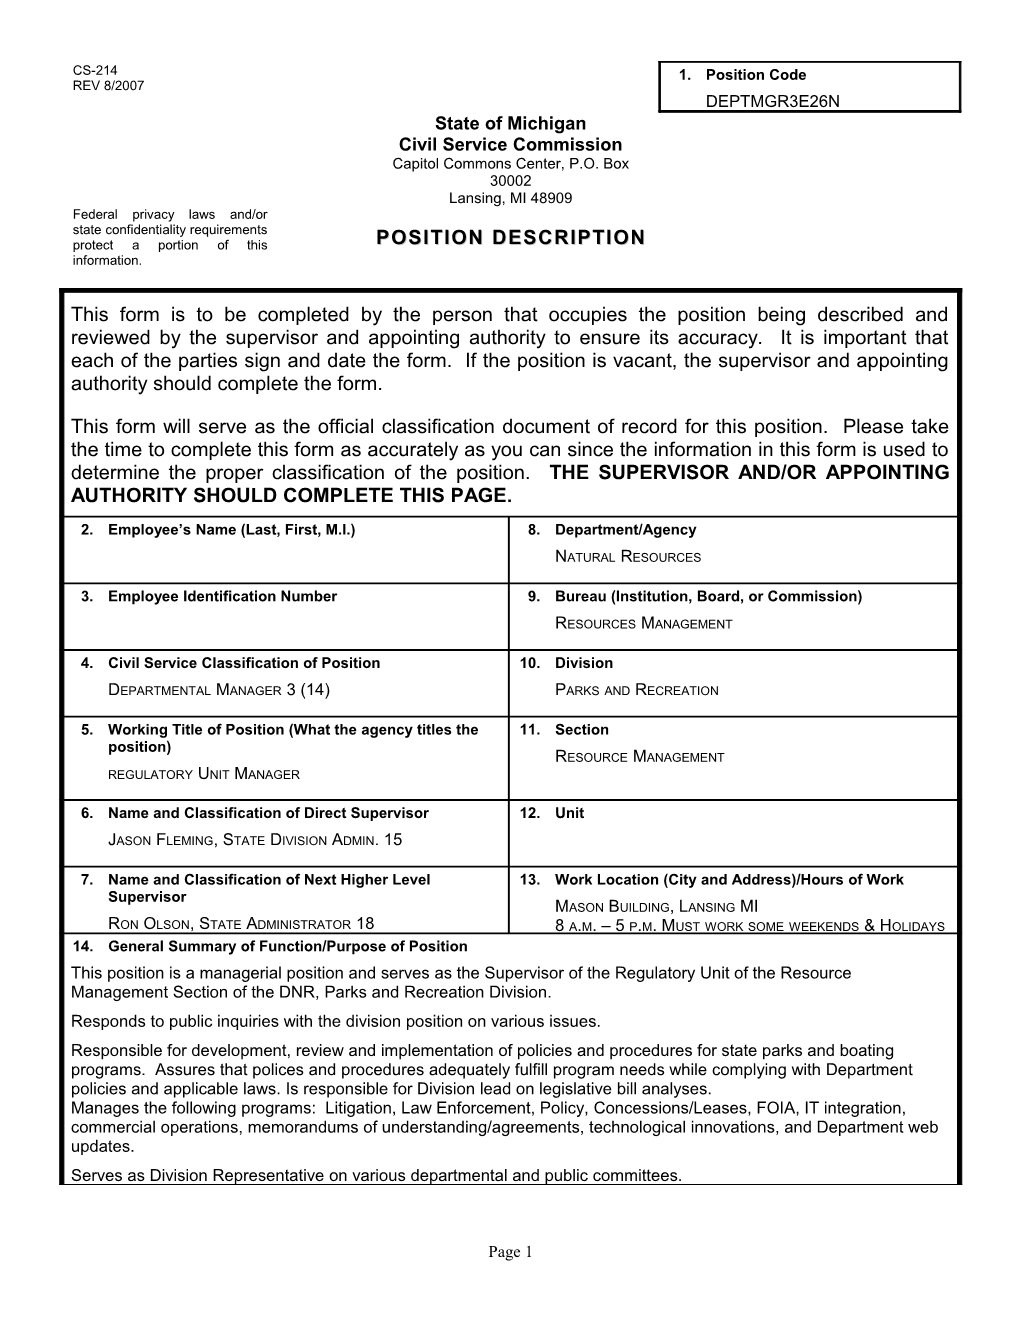 CS-214 Position Description Form s18